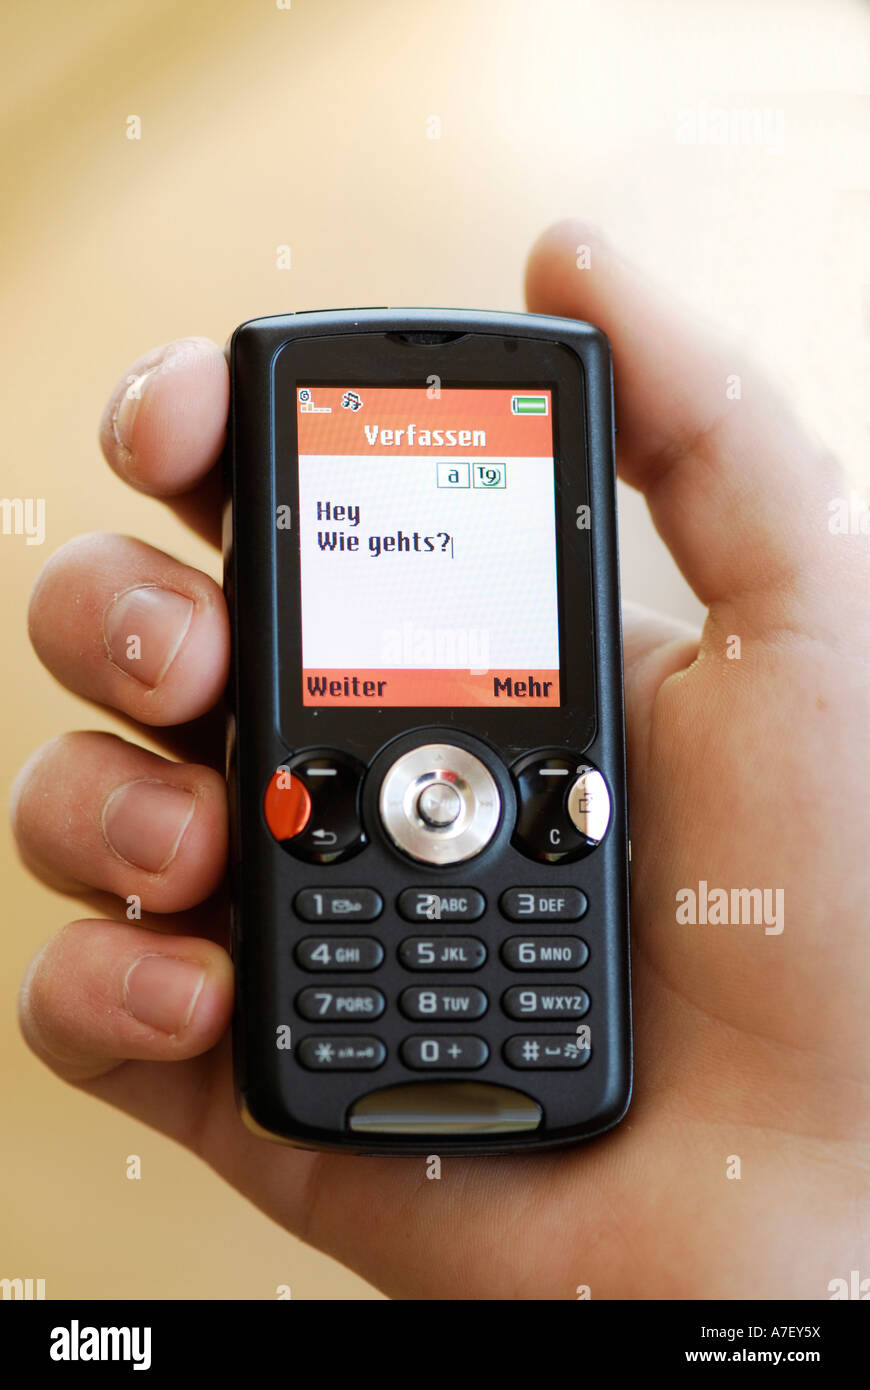 Sony Ericsson Handy Stockfoto